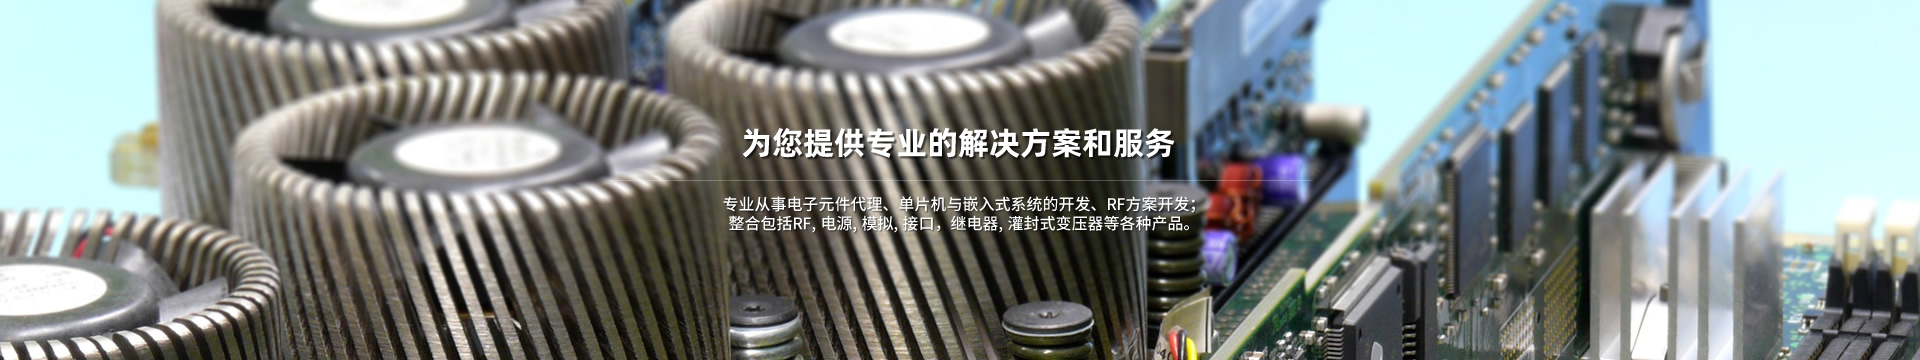 充电桩系列-上海杰纳电子科技有限公司-上海杰纳电子科技有限公司